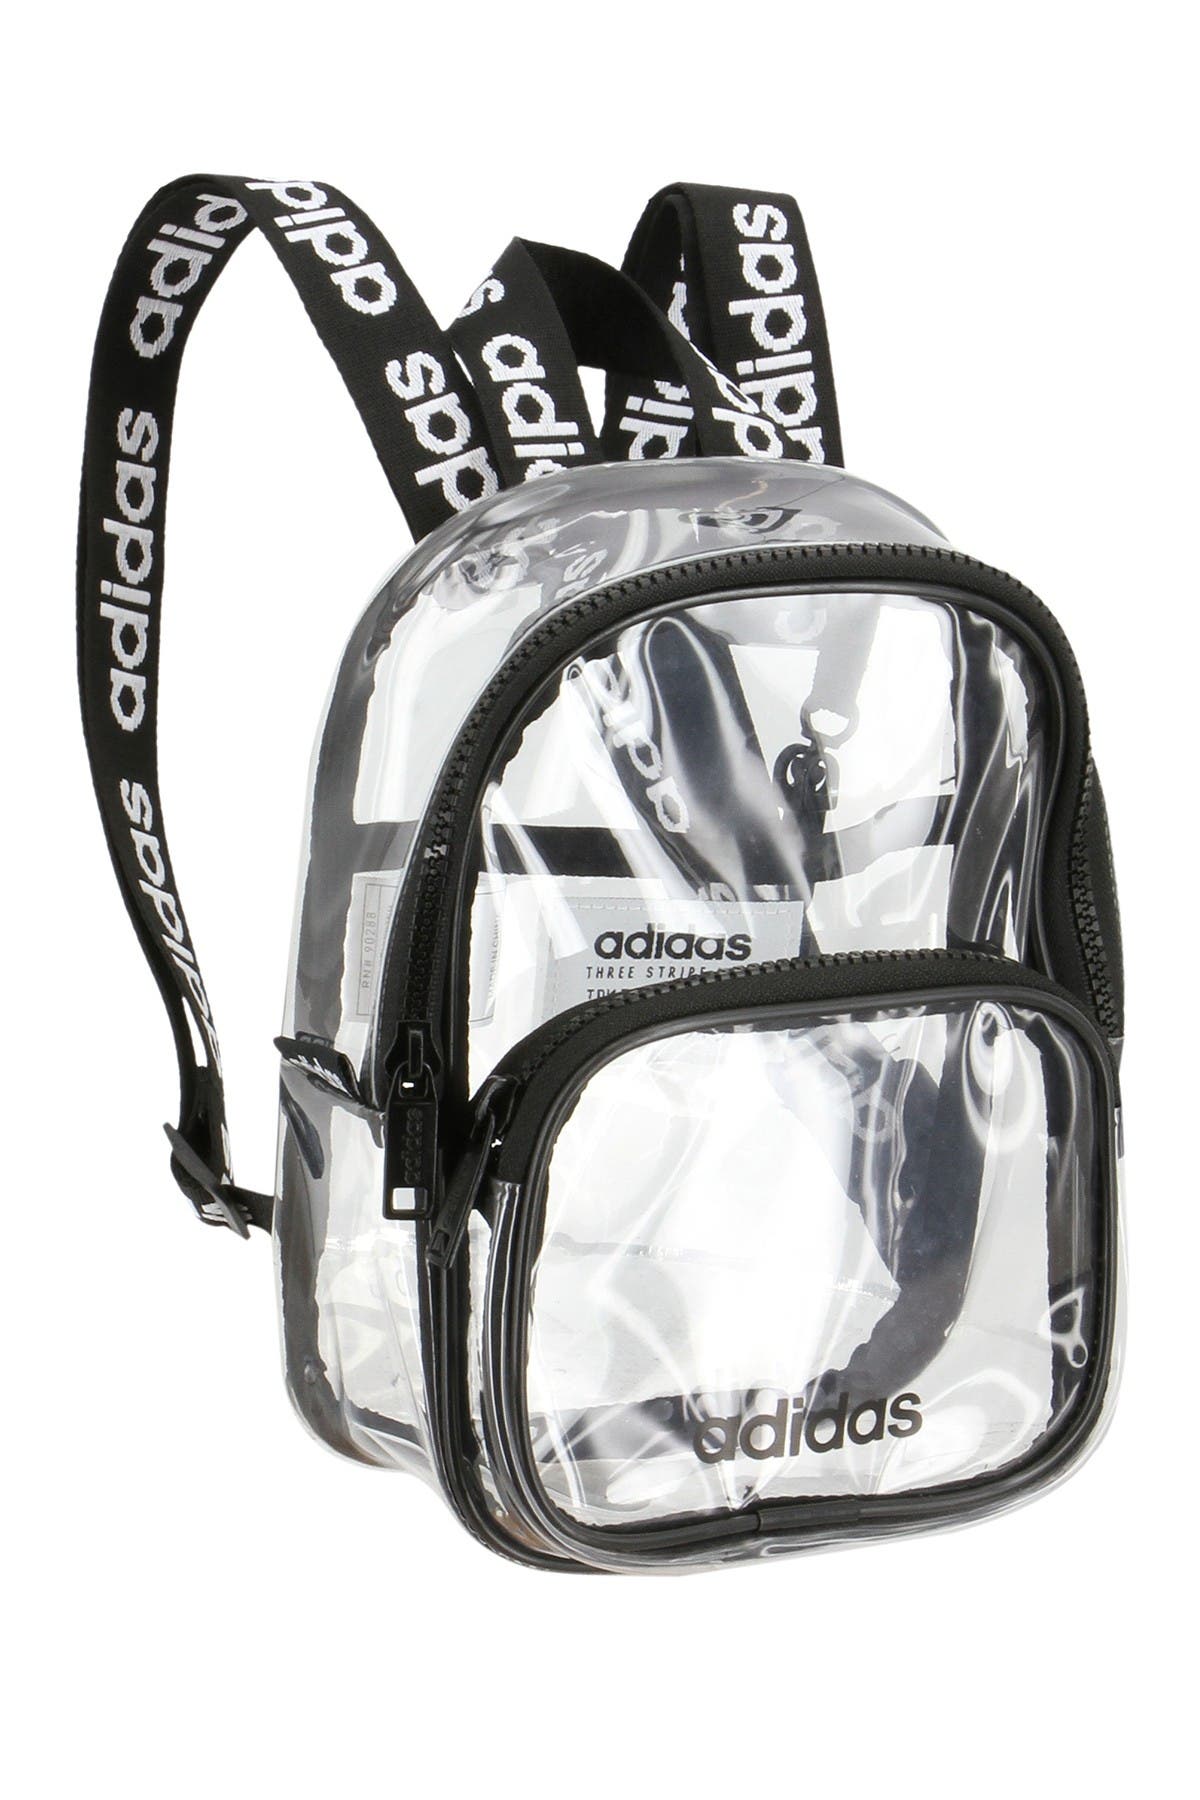 adidas backpack nordstrom rack